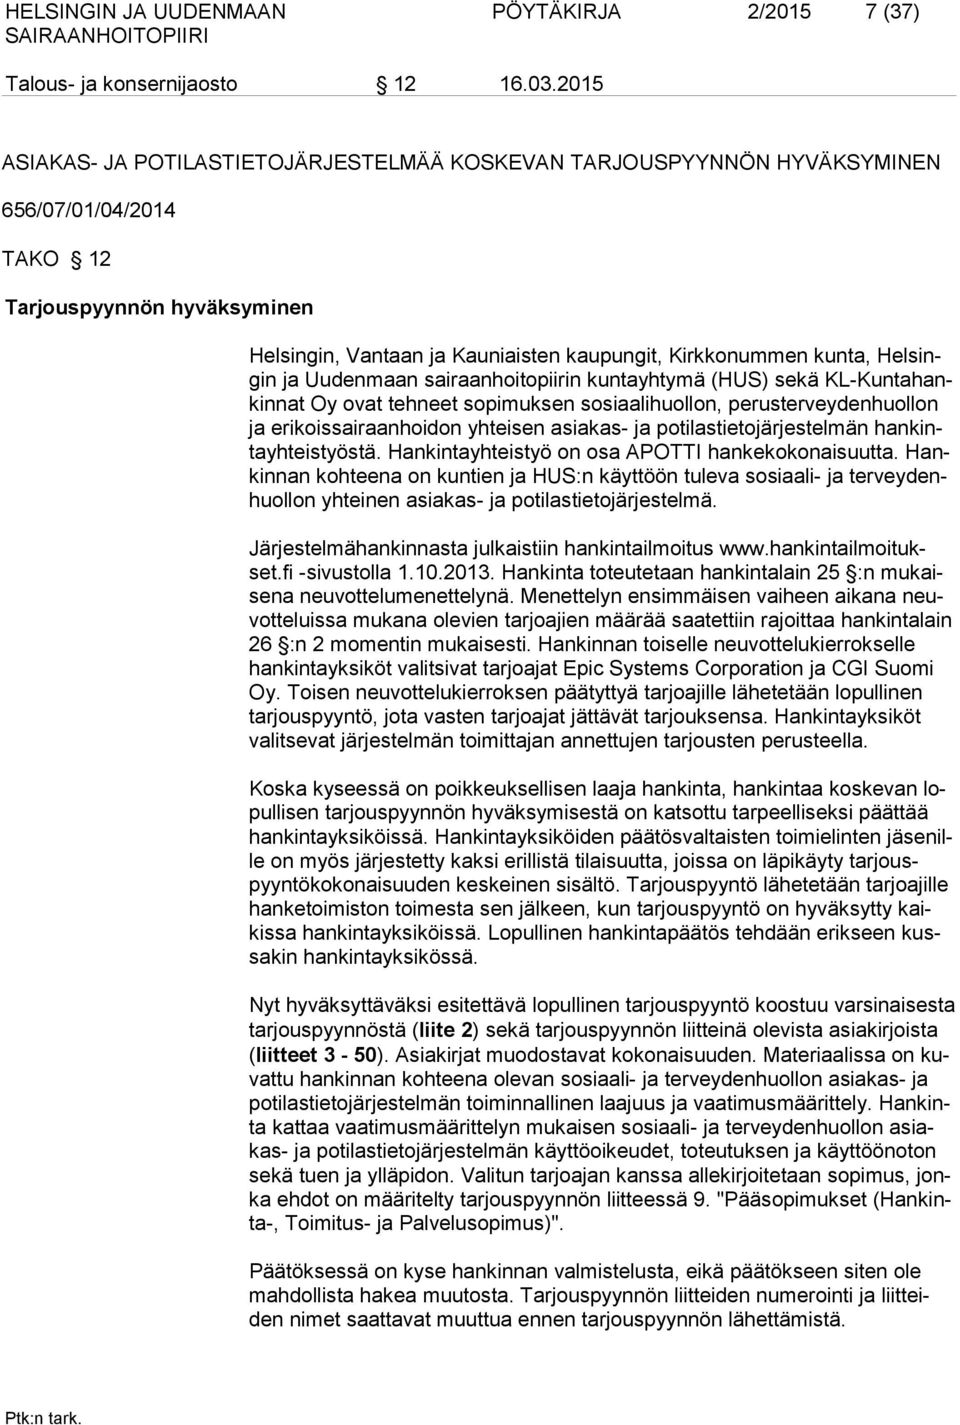 Helsingin ja Uudenmaan sairaanhoitopiirin kuntayhtymä (HUS) sekä KL-Kuntahankinnat Oy ovat tehneet sopimuksen sosiaalihuollon, perusterveydenhuollon ja erikoissairaanhoidon yhteisen asiakas- ja